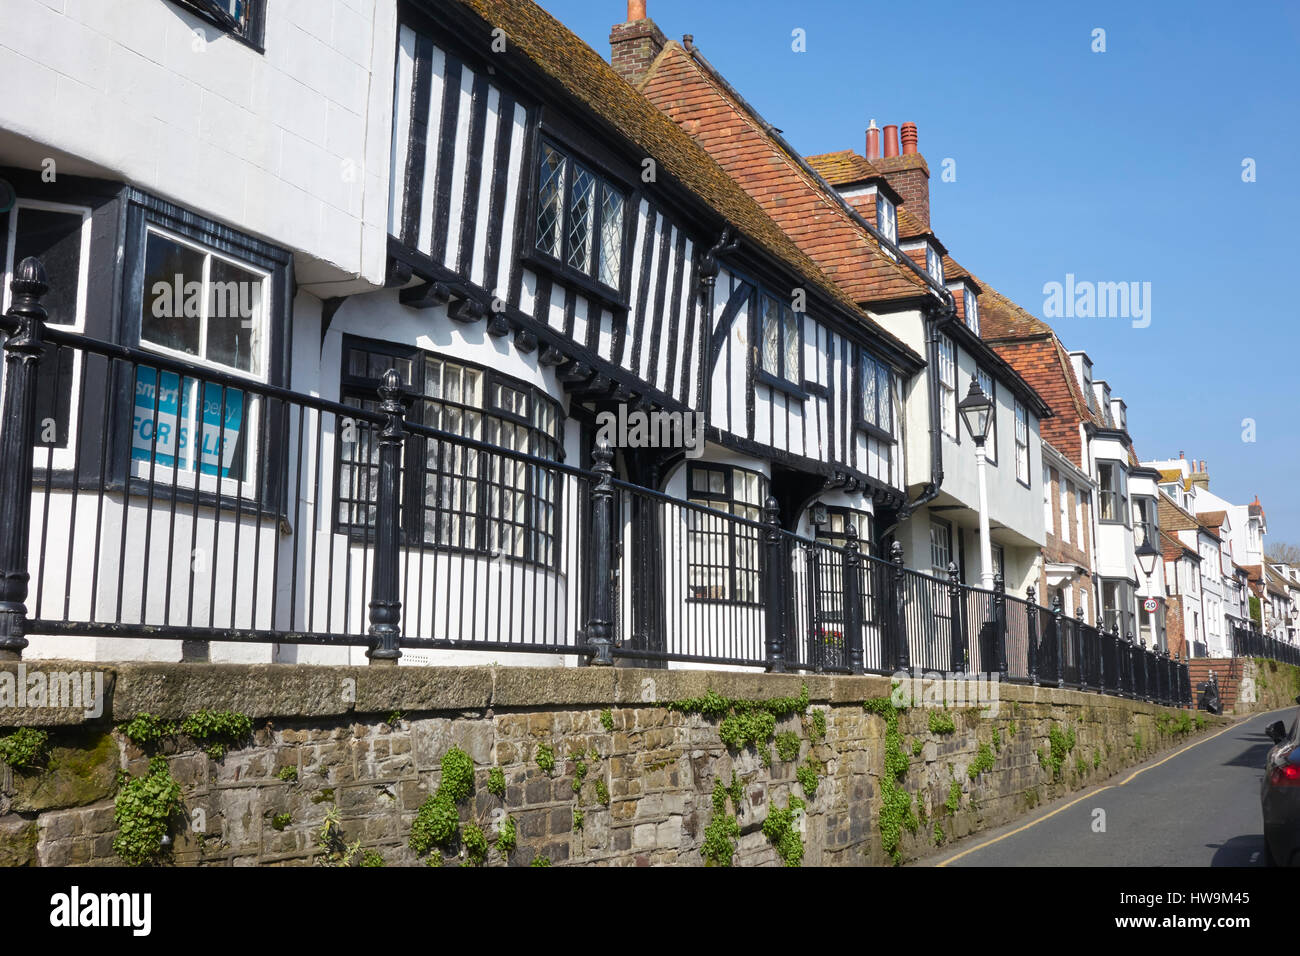 Altstadt von Hastings Street, Fachwerkhaus tudor Häuser auf dem erhöhten Bürgersteig, East Sussex, England, Großbritannien, Großbritannien, GB, Stockfoto